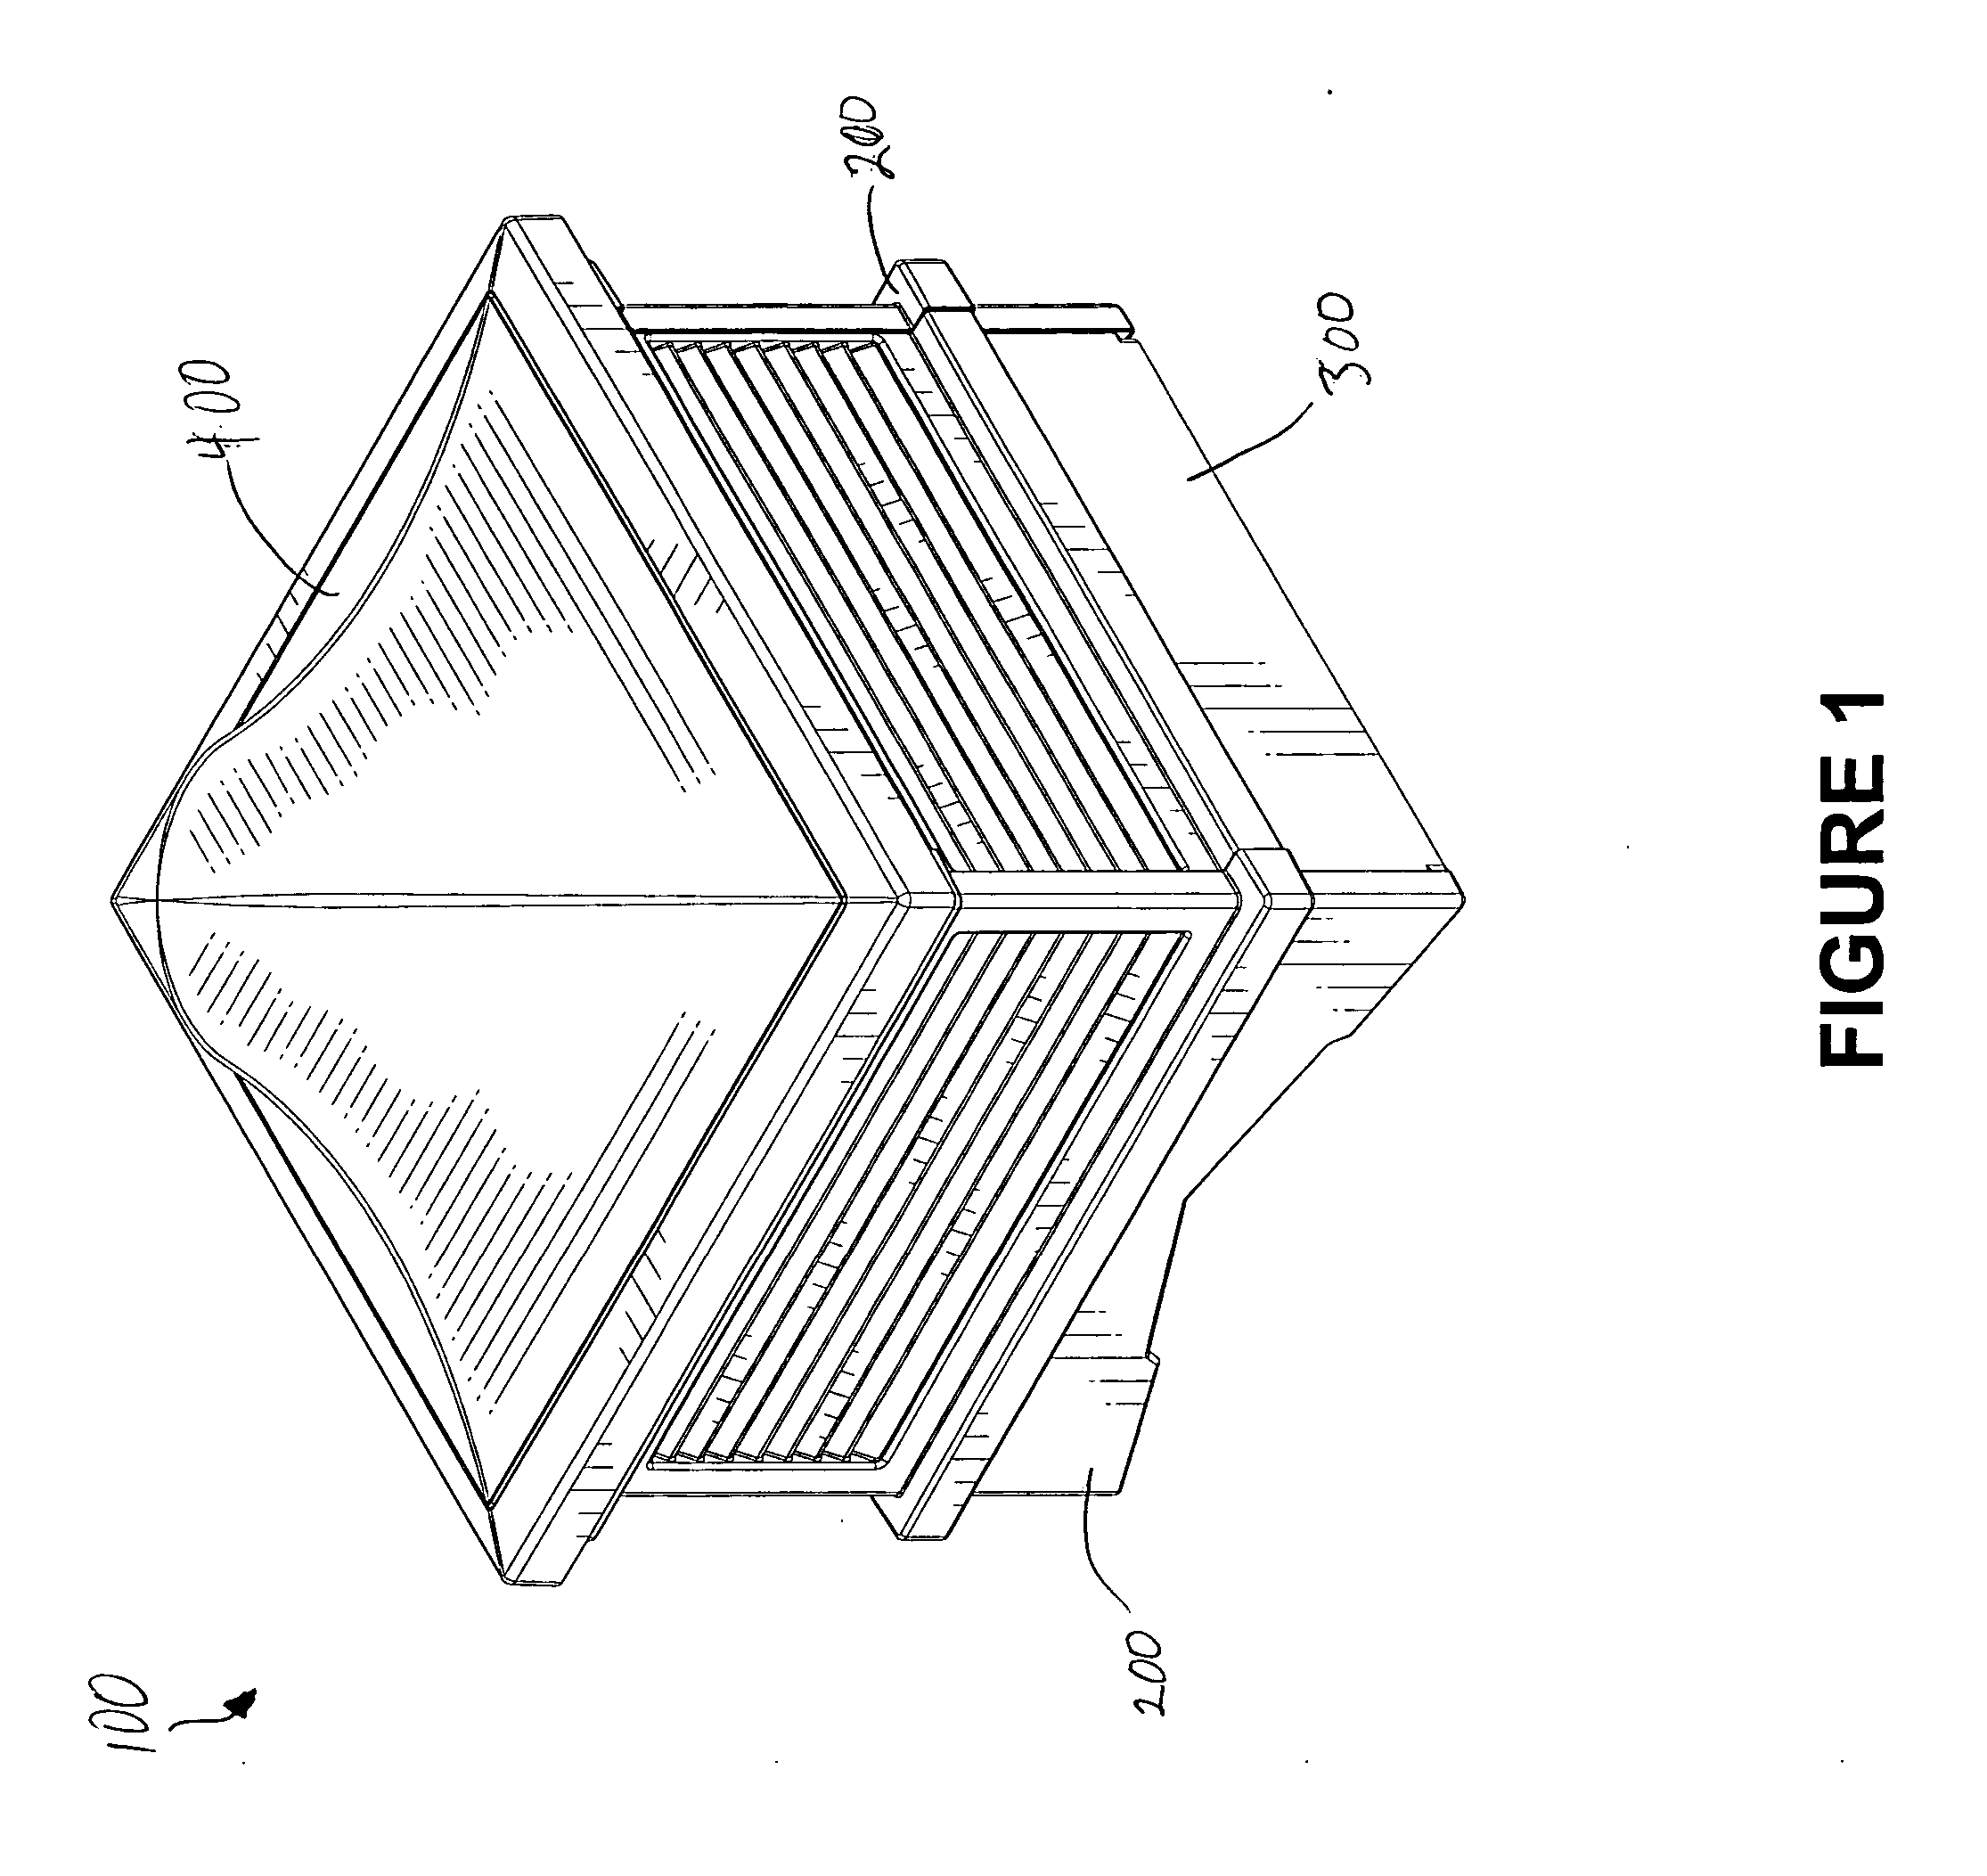 Modular cupola assembly